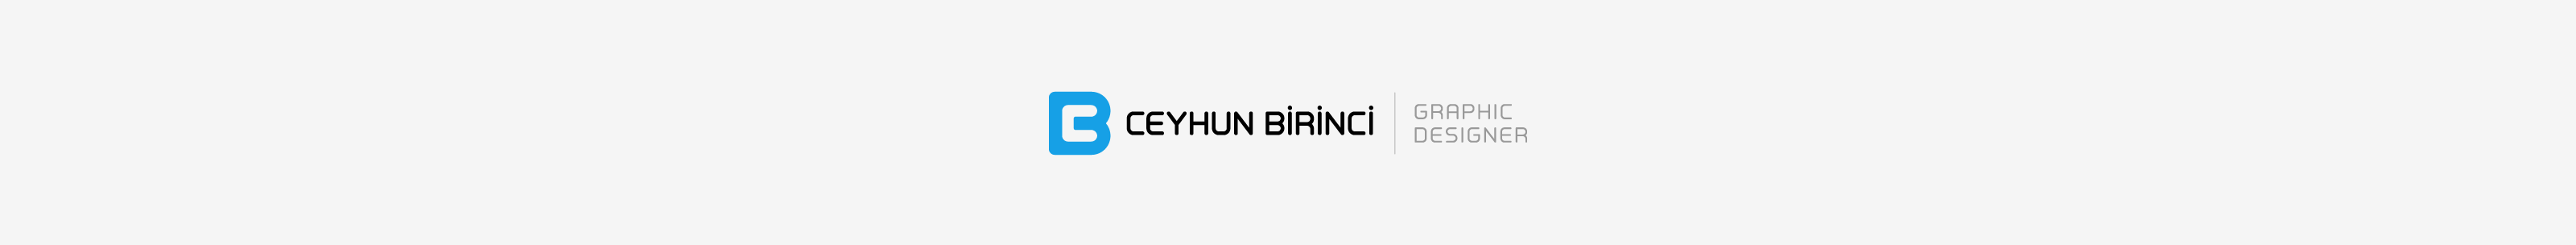 Ceyhun Birinci's profile banner